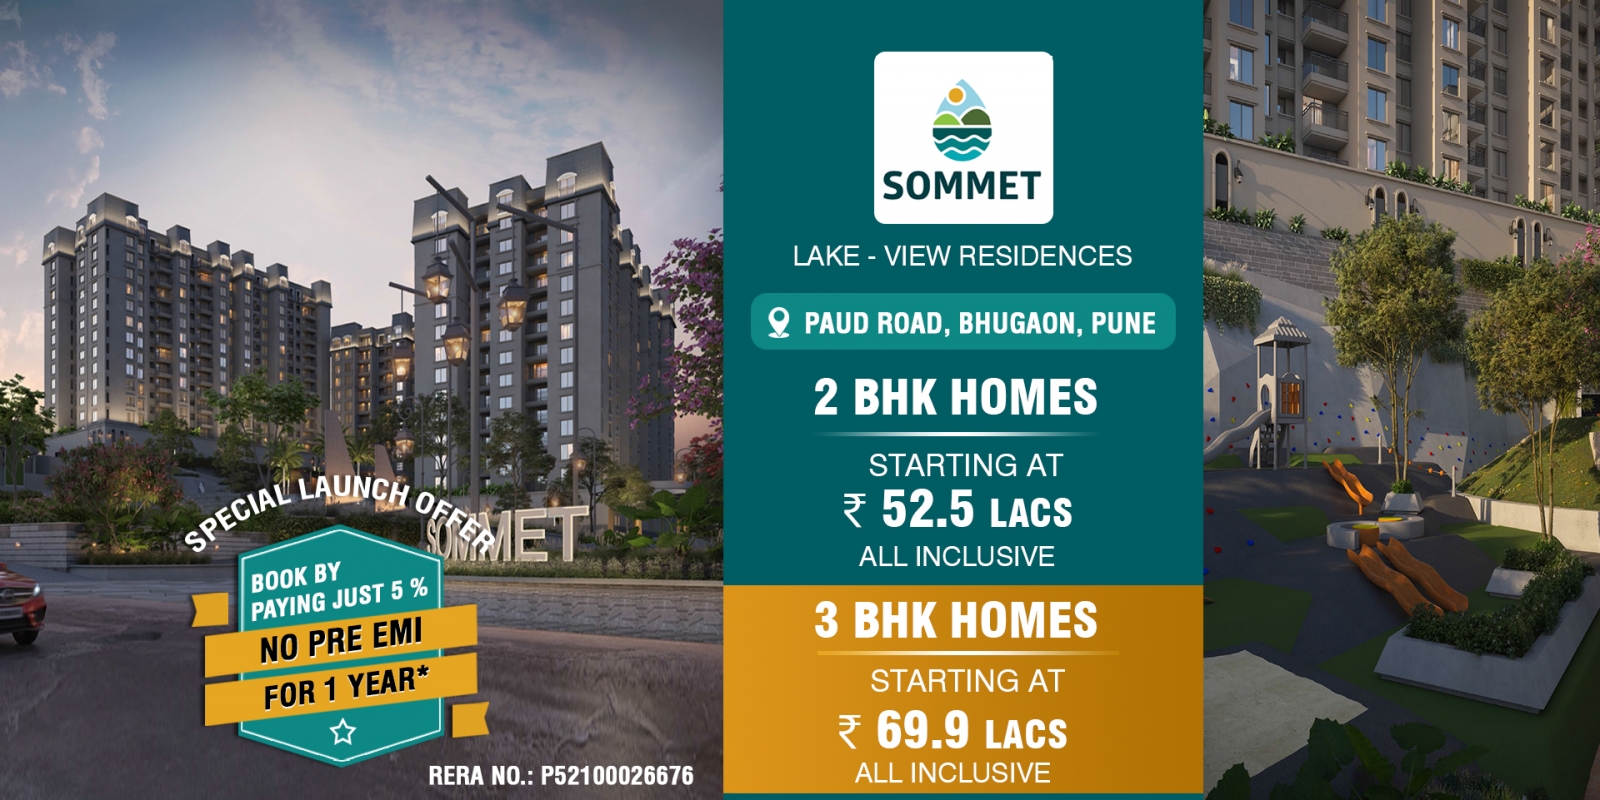 Sommet Lake View Residences Pune-banner.jpg